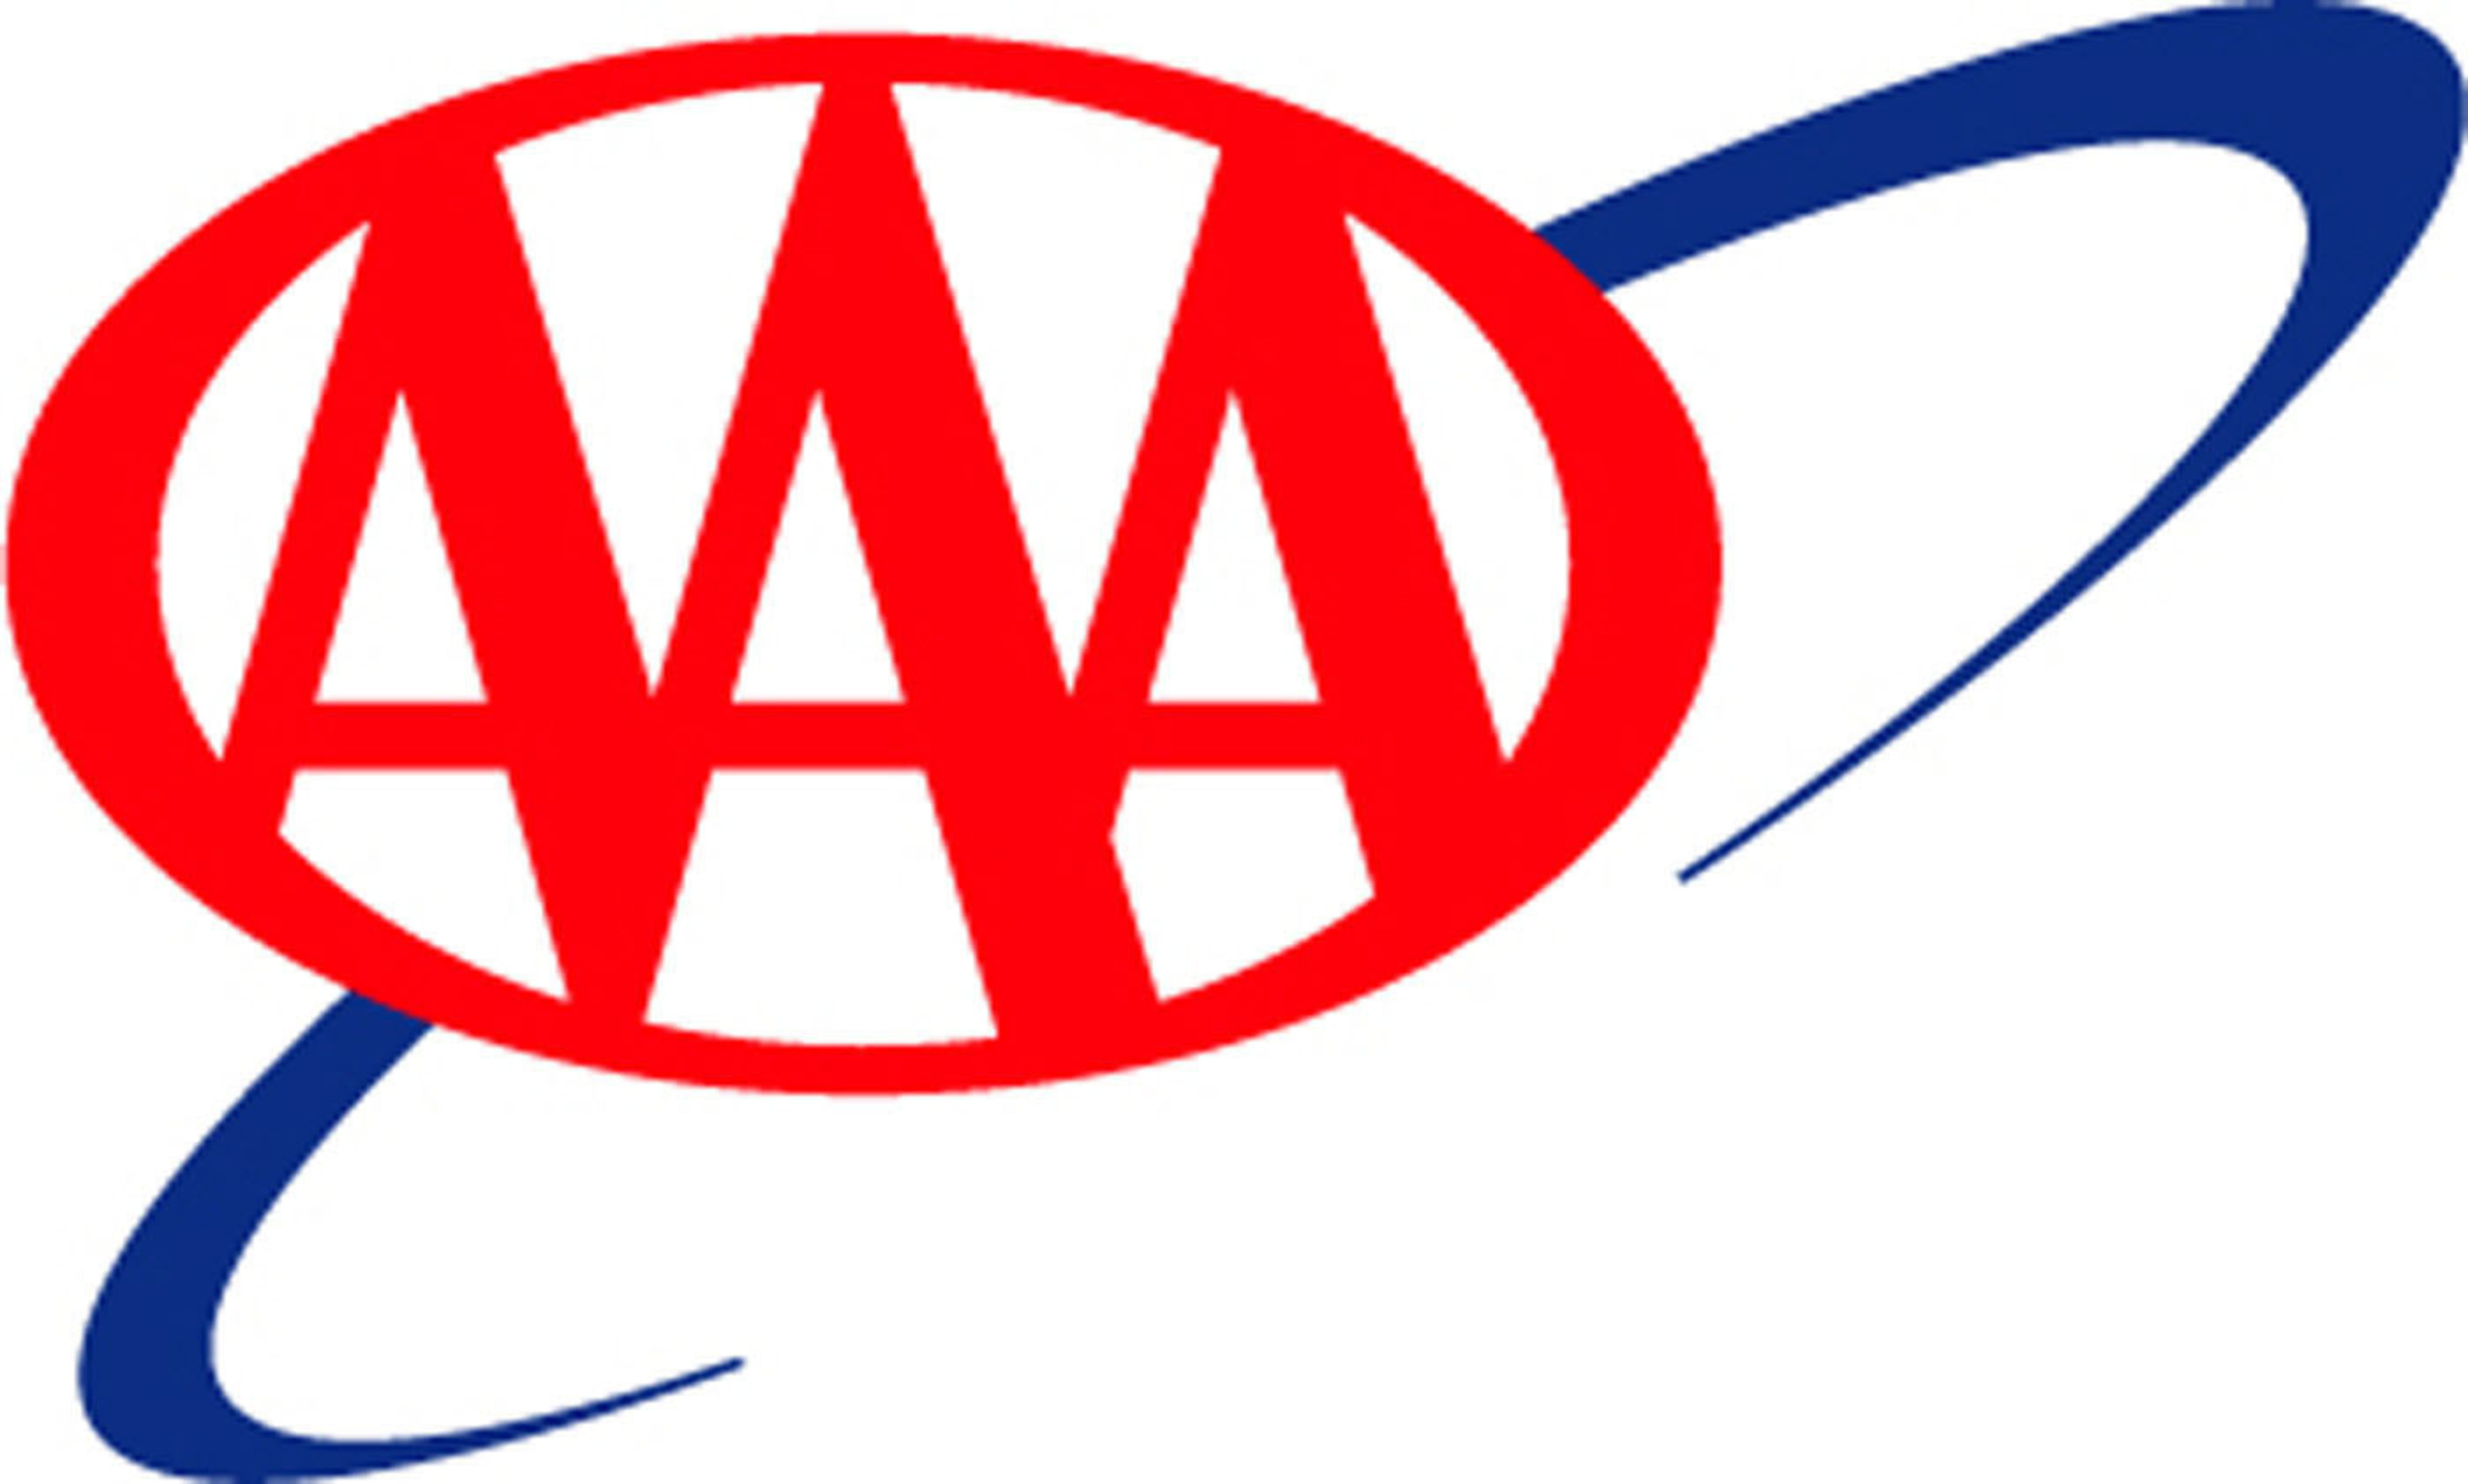 AAA-Chicago Motor Club logo. (PRNewsFoto/AAA-CHICAGO MOTOR CLUB) (PRNewsFoto/)